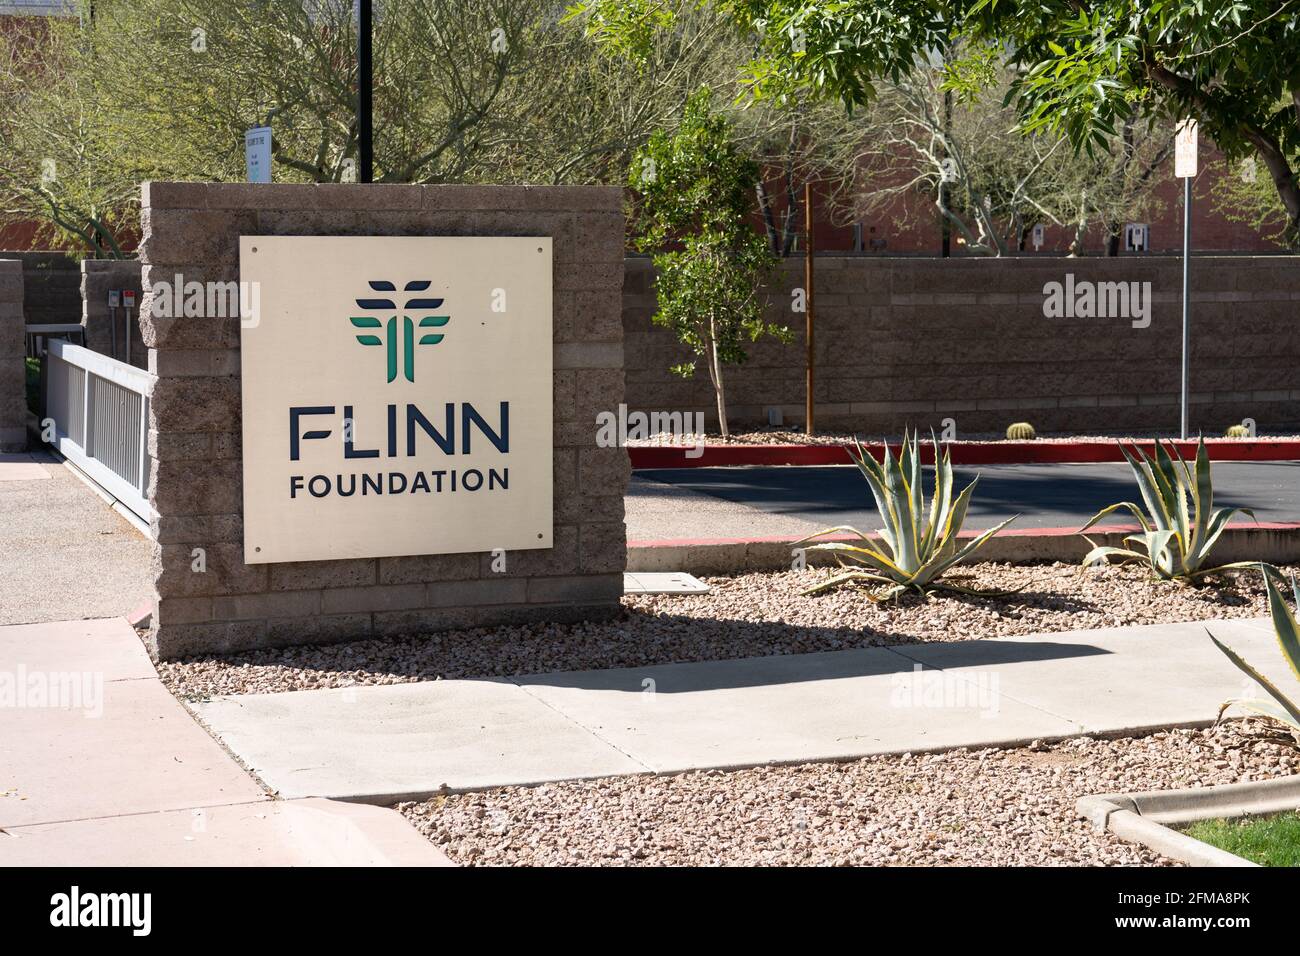 Phoenix, AZ - 20 de marzo de 2021: La Fundación Flinn es una organización filantrópica cuya misión es mejorar la calidad de vida en Arizona Foto de stock